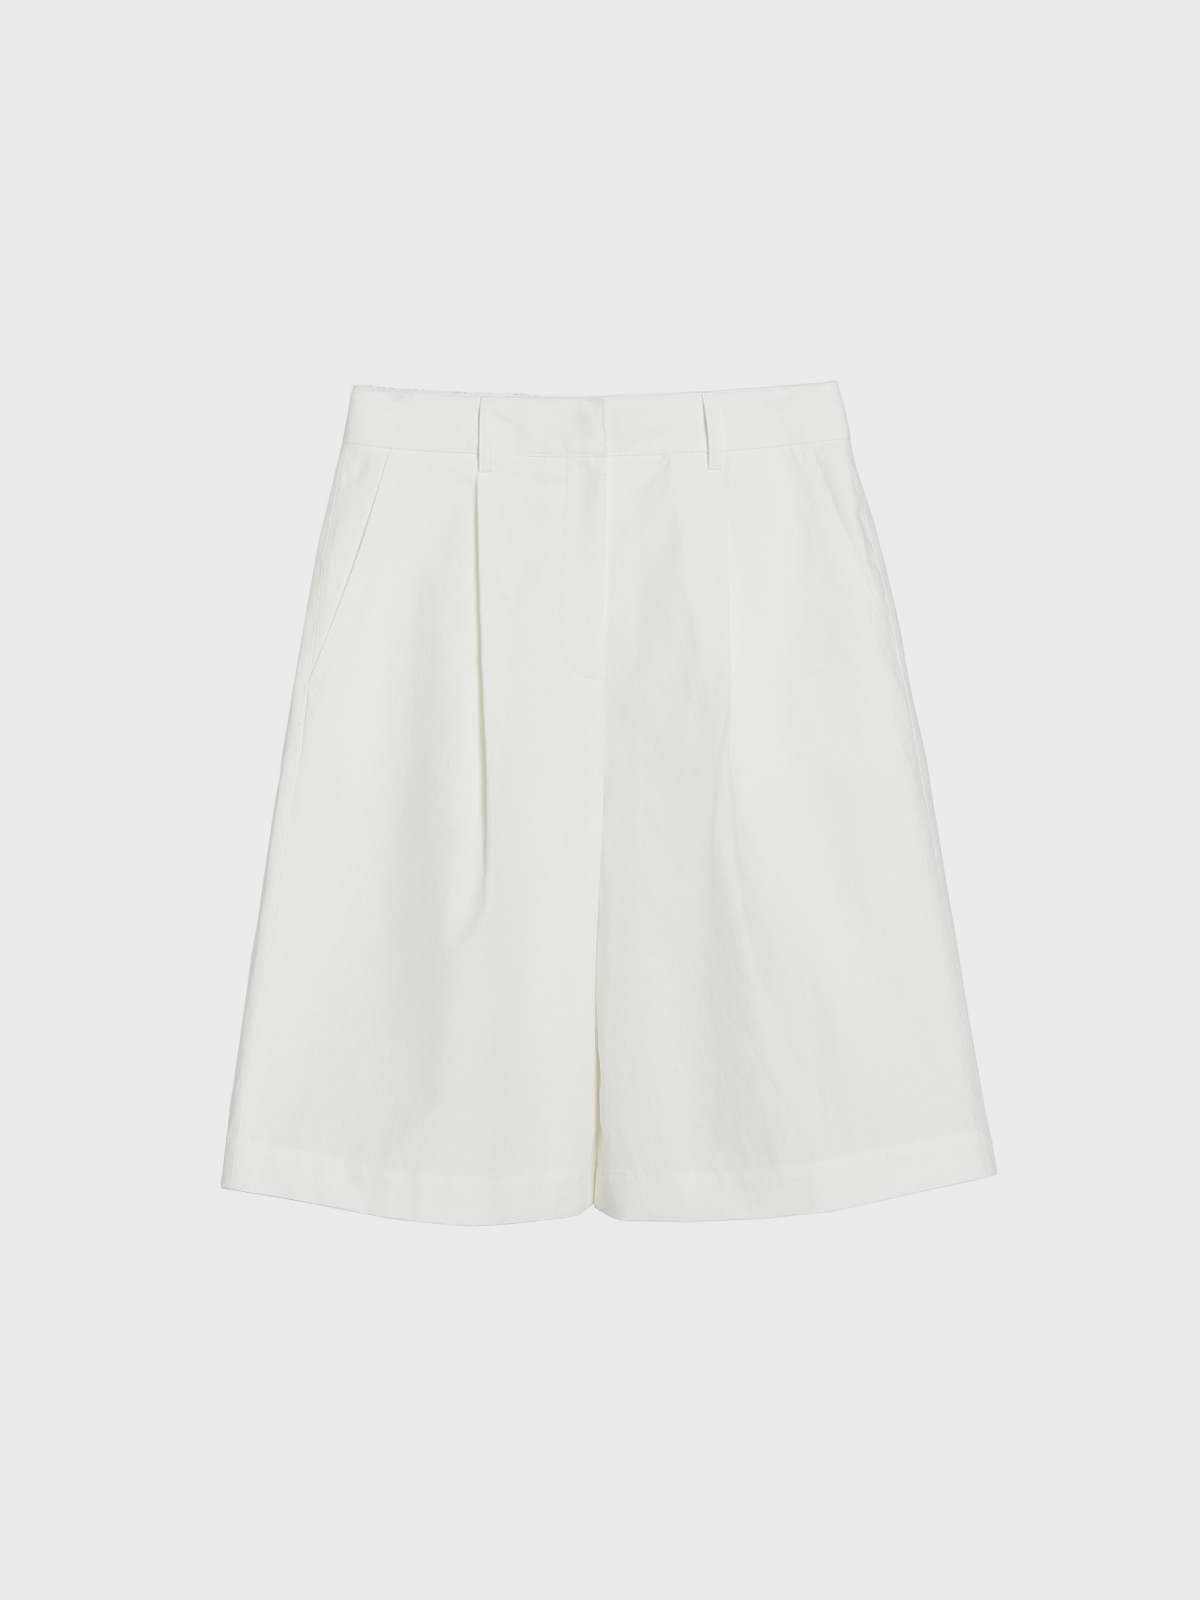 Layered Zip Midi Skirt